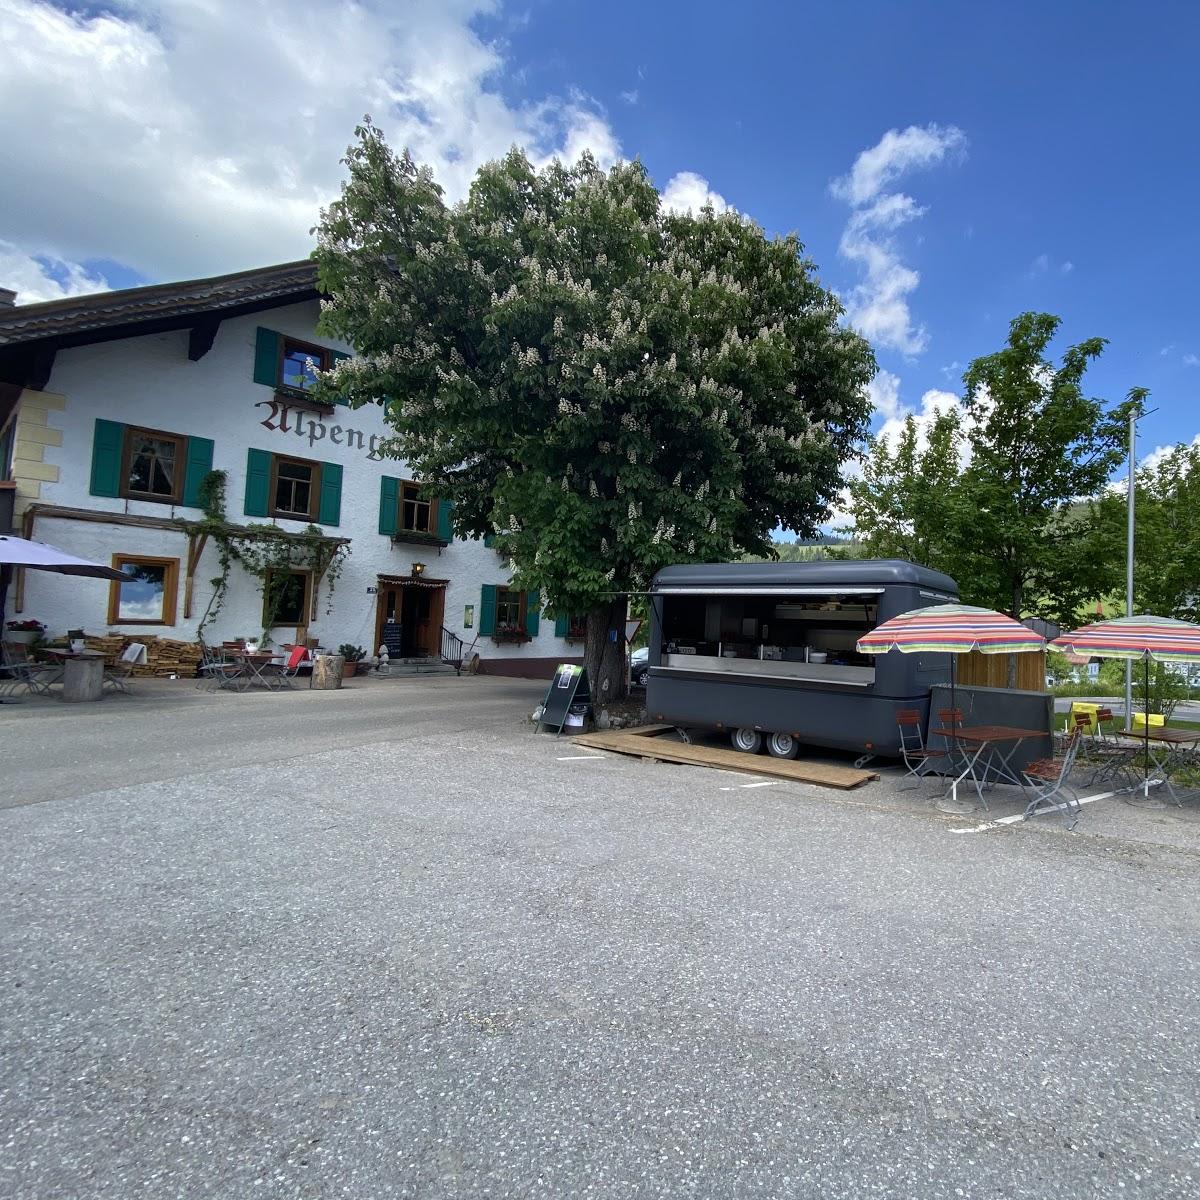 Restaurant "Alpengasthof zur Post" in Schattwald